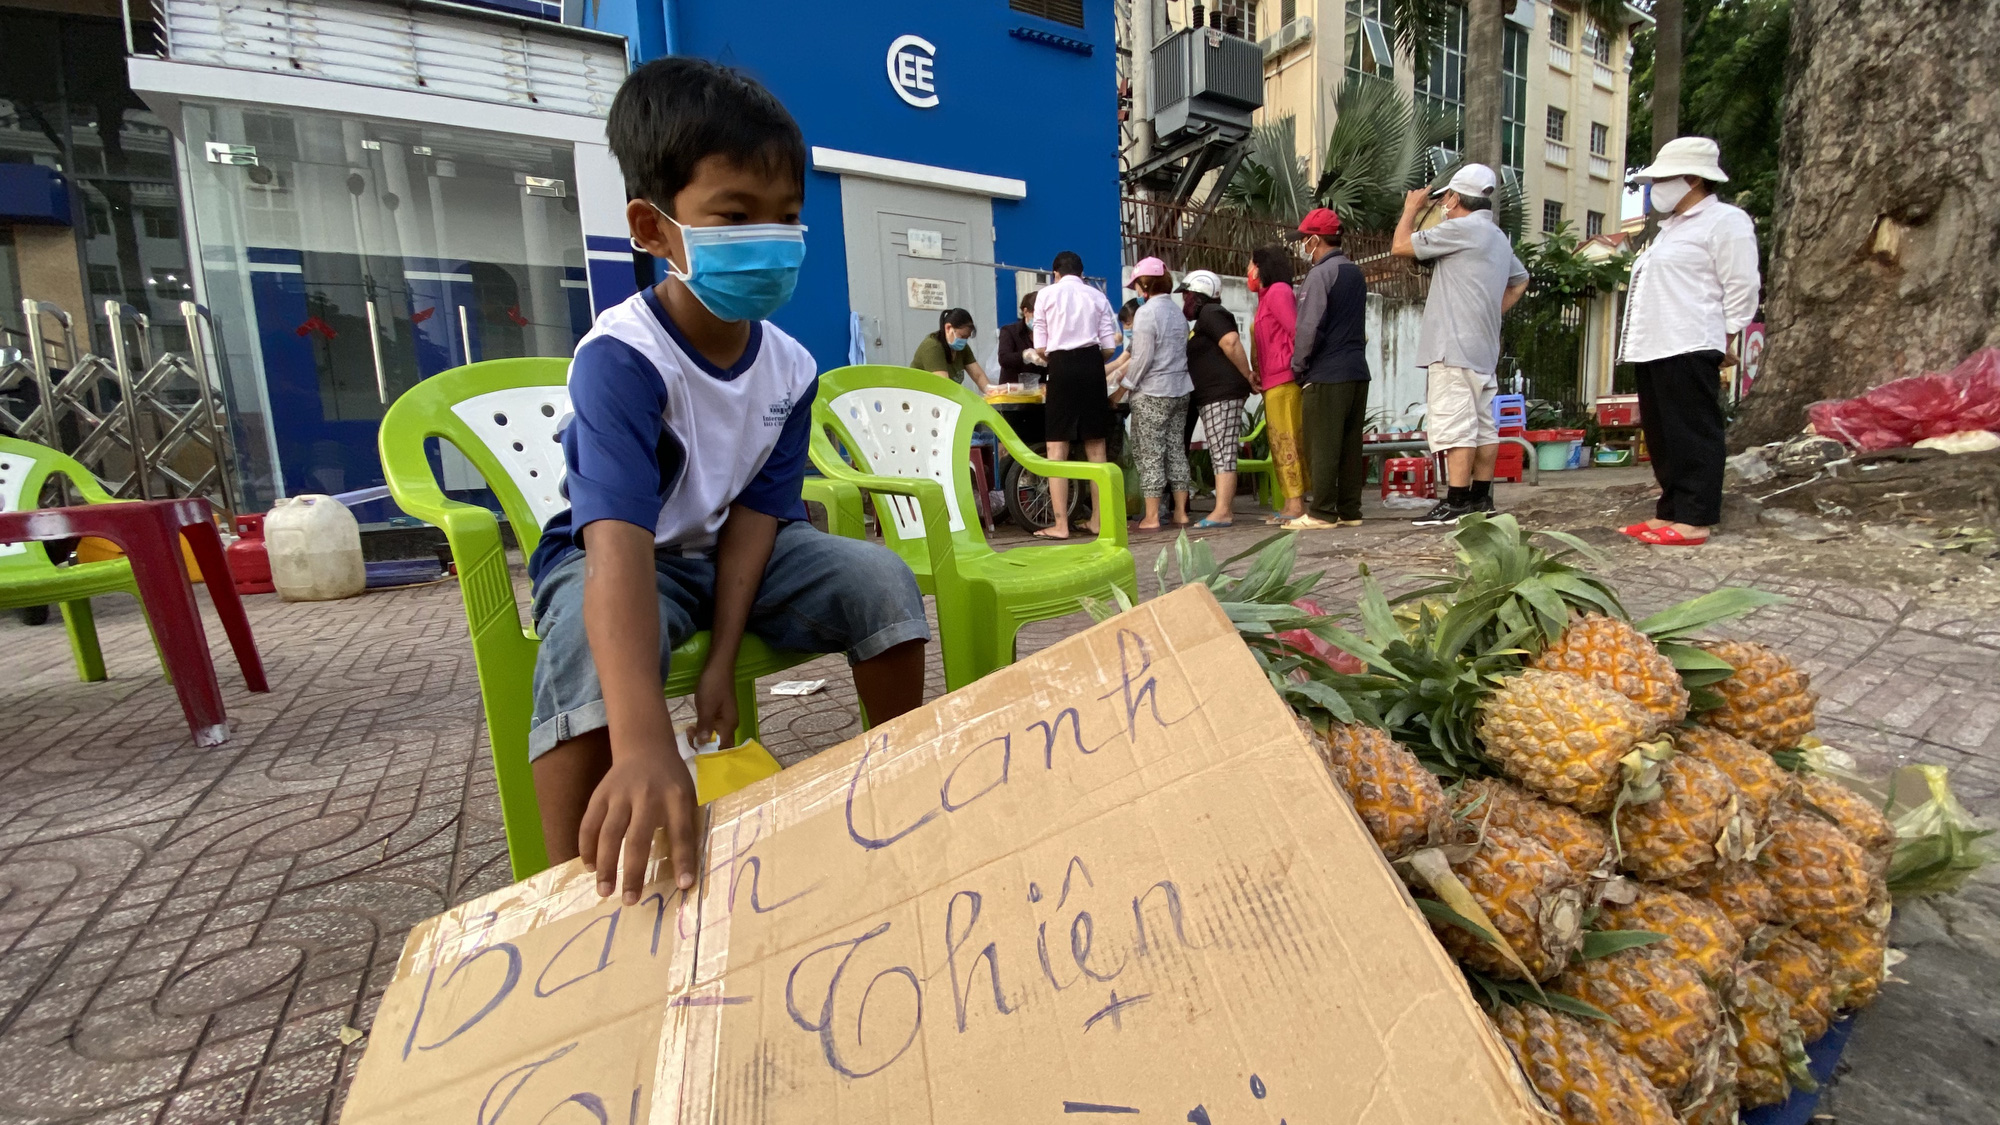 Hành động đẹp của cậu bé 10 tuổi ở góc đường An Dương Vương, quận 5 - Ảnh 2.